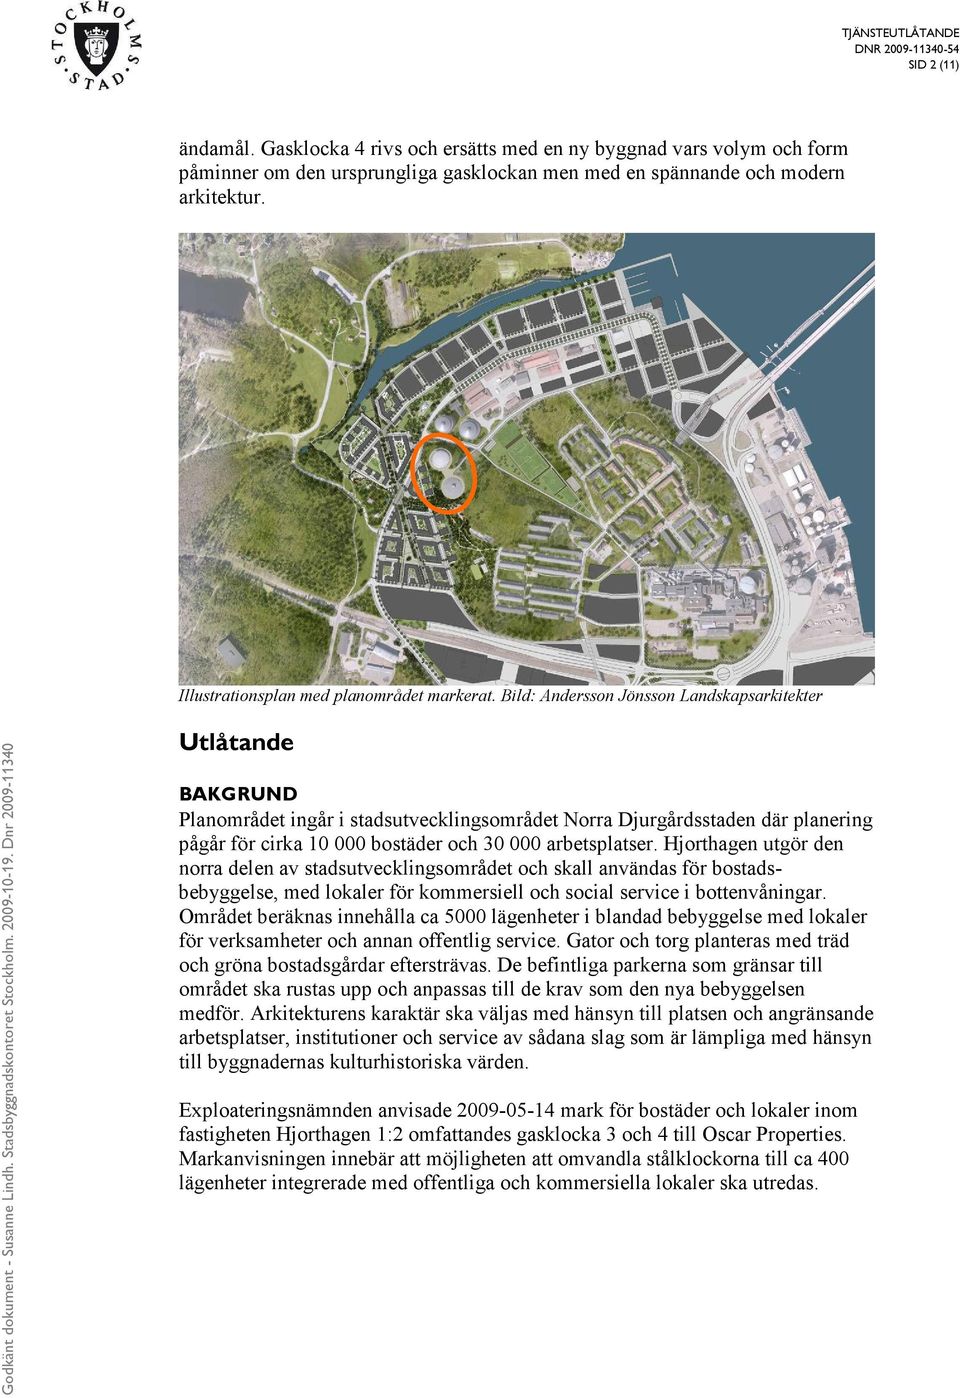 Bild: Andersson Jönsson Landskapsarkitekter Utlåtande BAKGRUND Planområdet ingår i stadsutvecklingsområdet Norra Djurgårdsstaden där planering pågår för cirka 10 000 bostäder och 30 000 arbetsplatser.